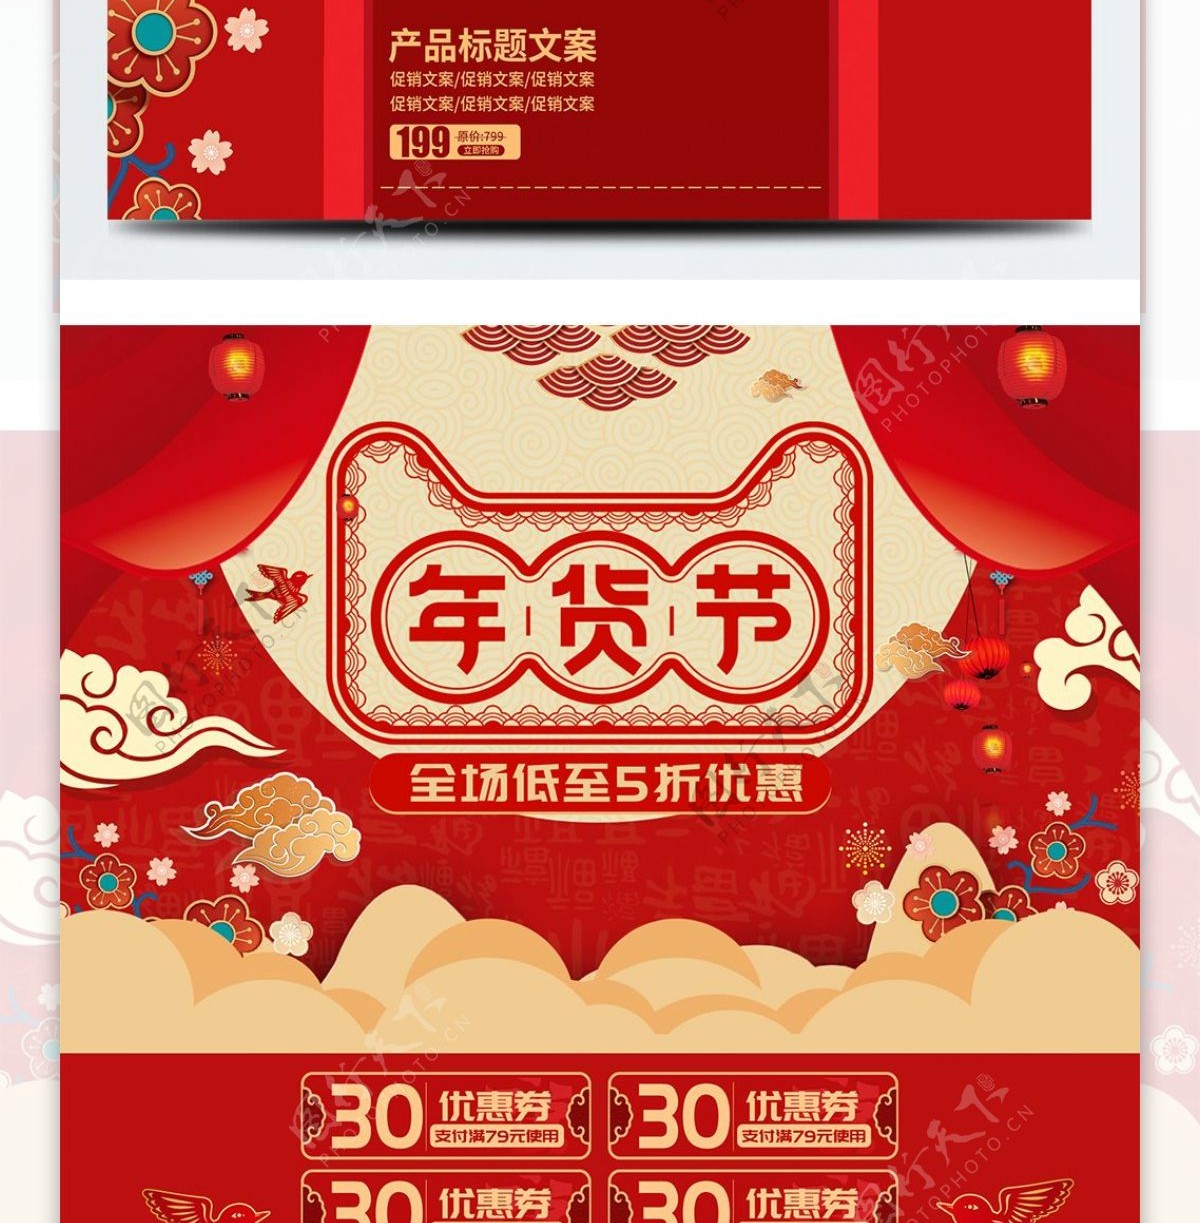 喜庆中国风红色年货节首页促销活动电商模板